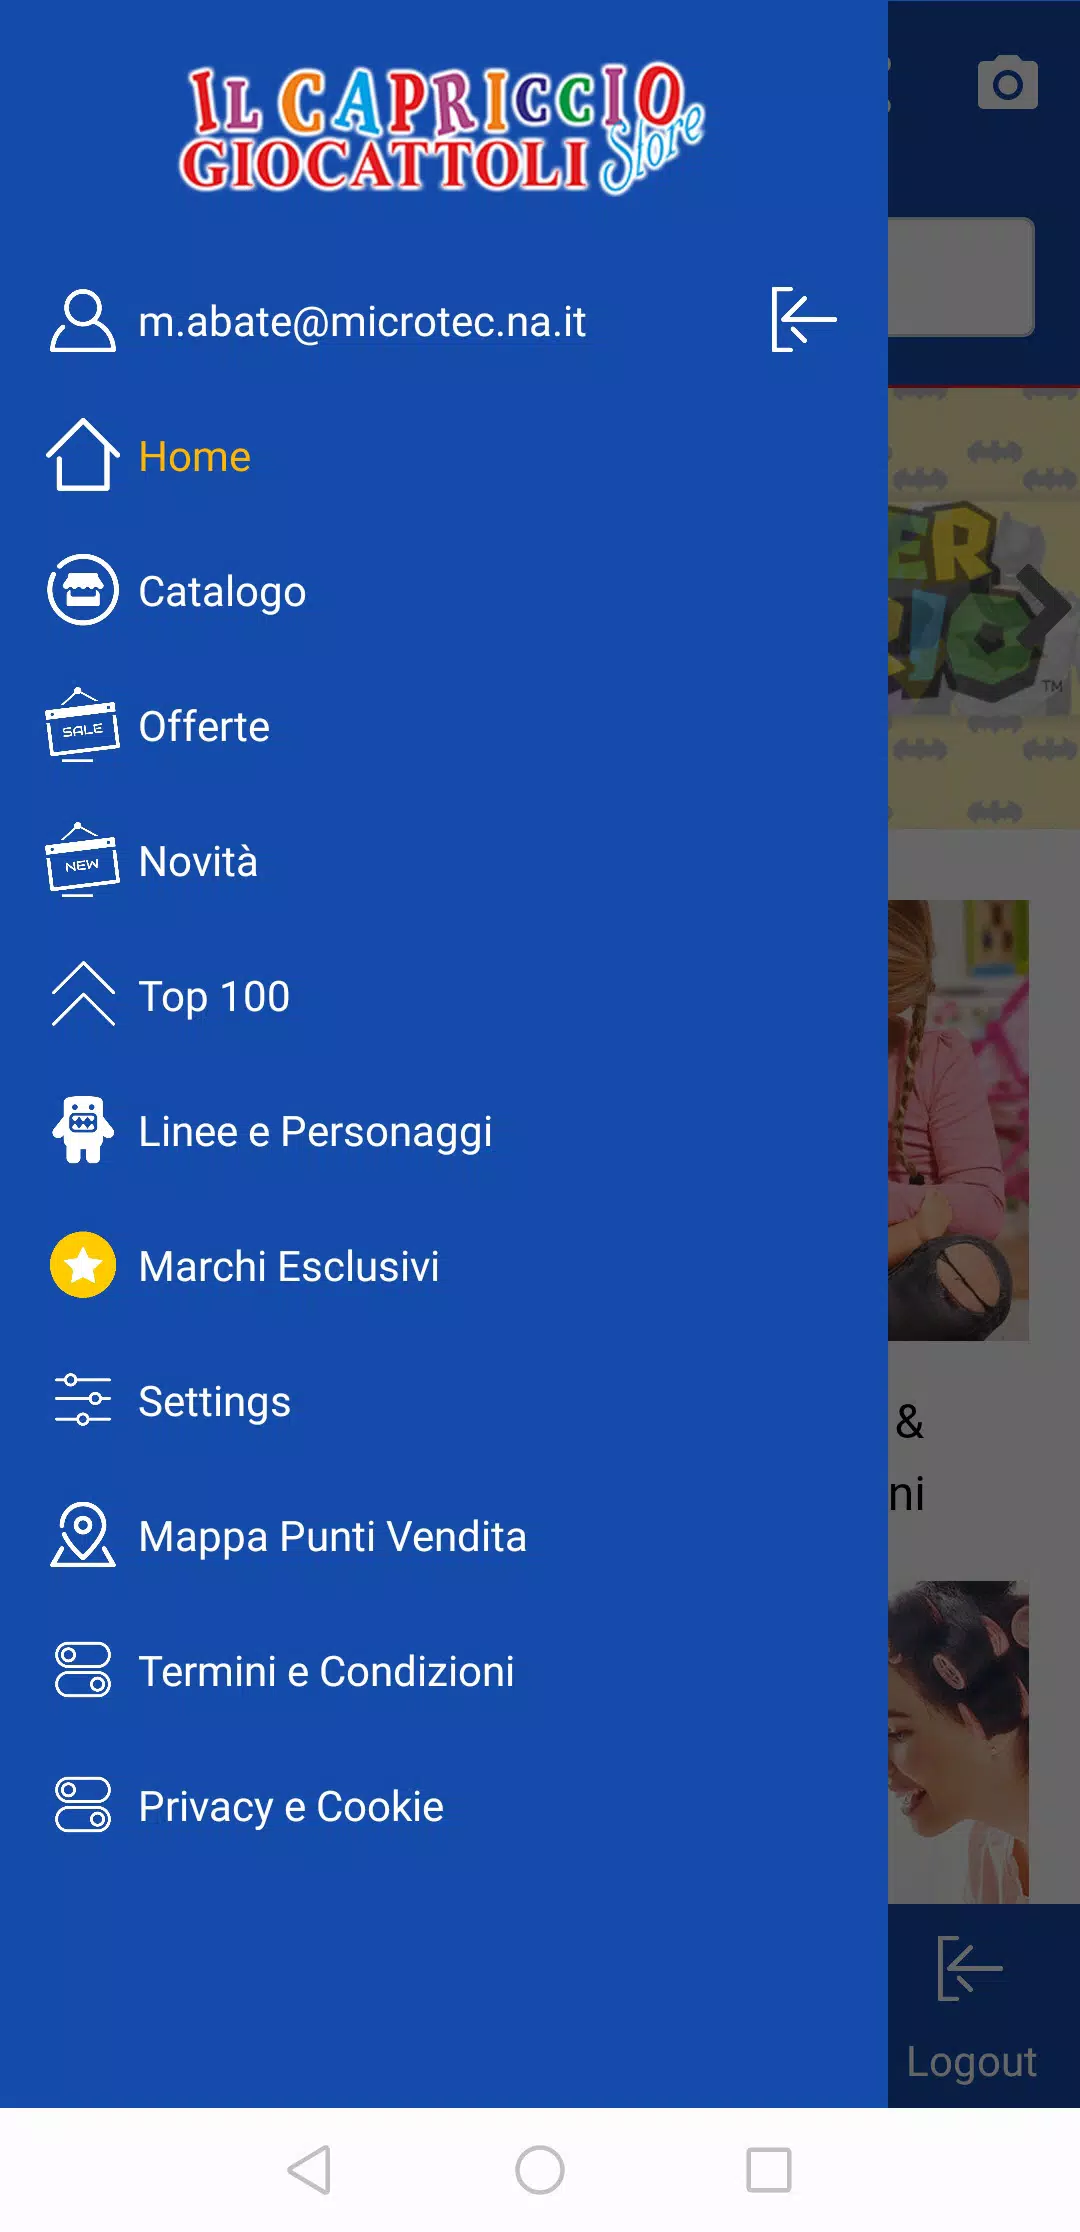 Il Capriccio Giocattoli for Android - APK Download